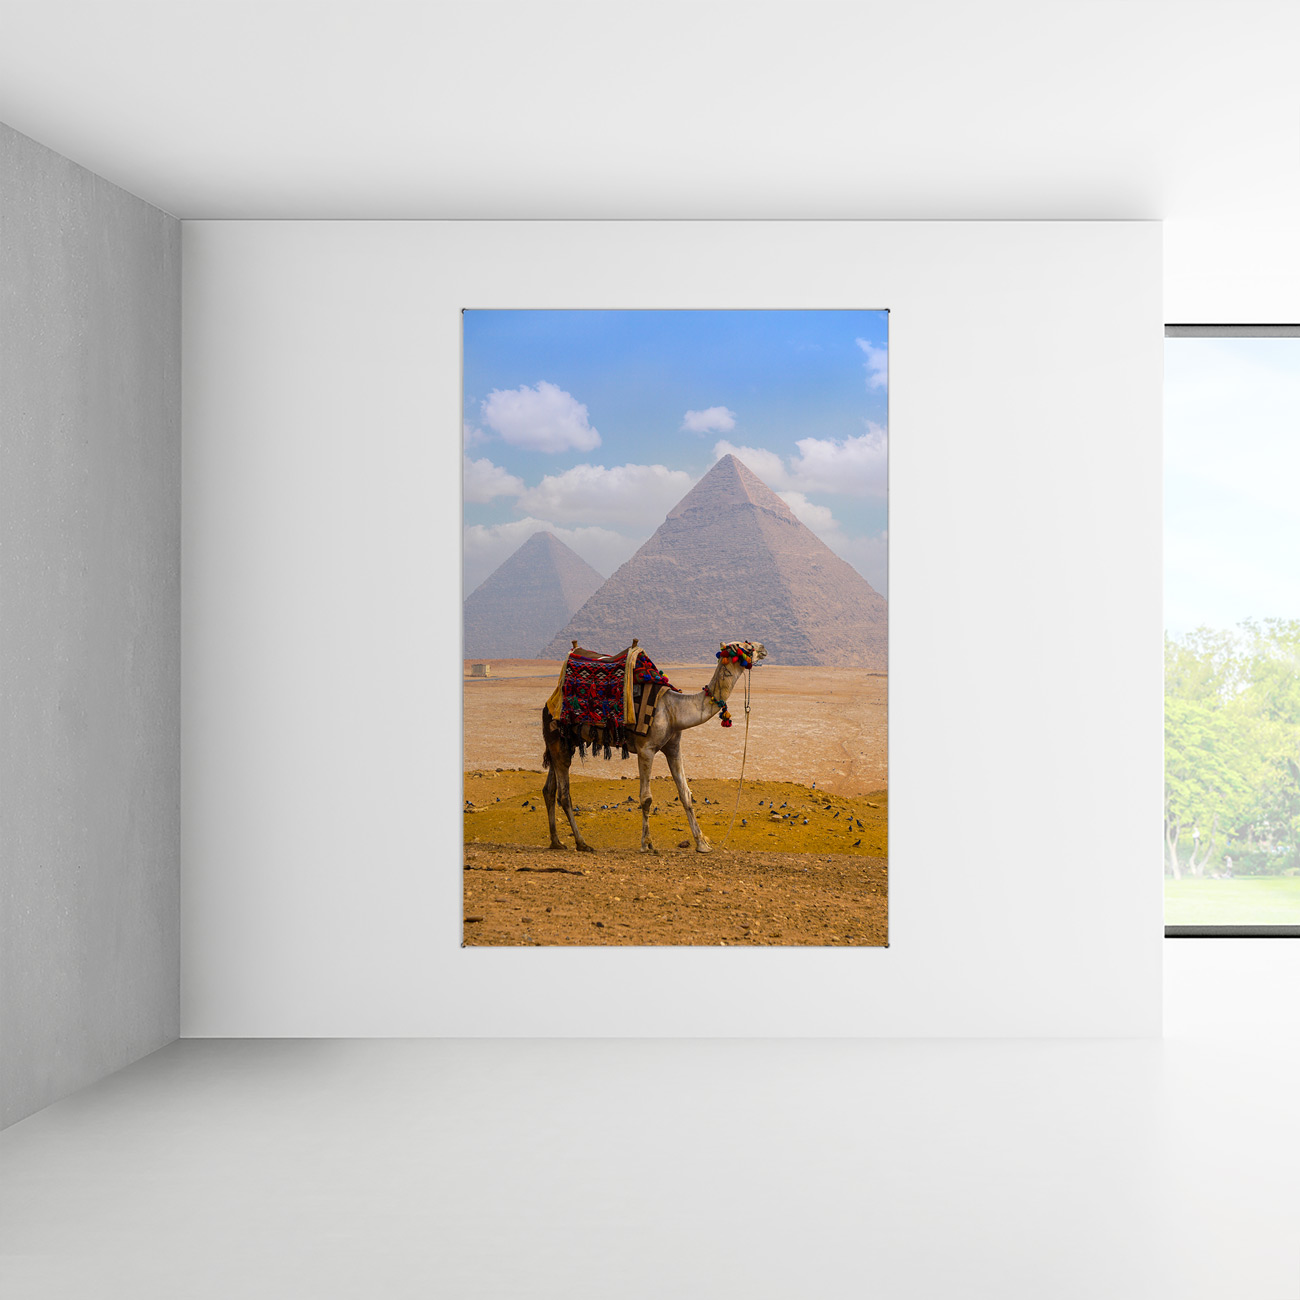 Flot udvalg af dyremotiver med eksotiske dyr, her en kamel foran pyramiderne